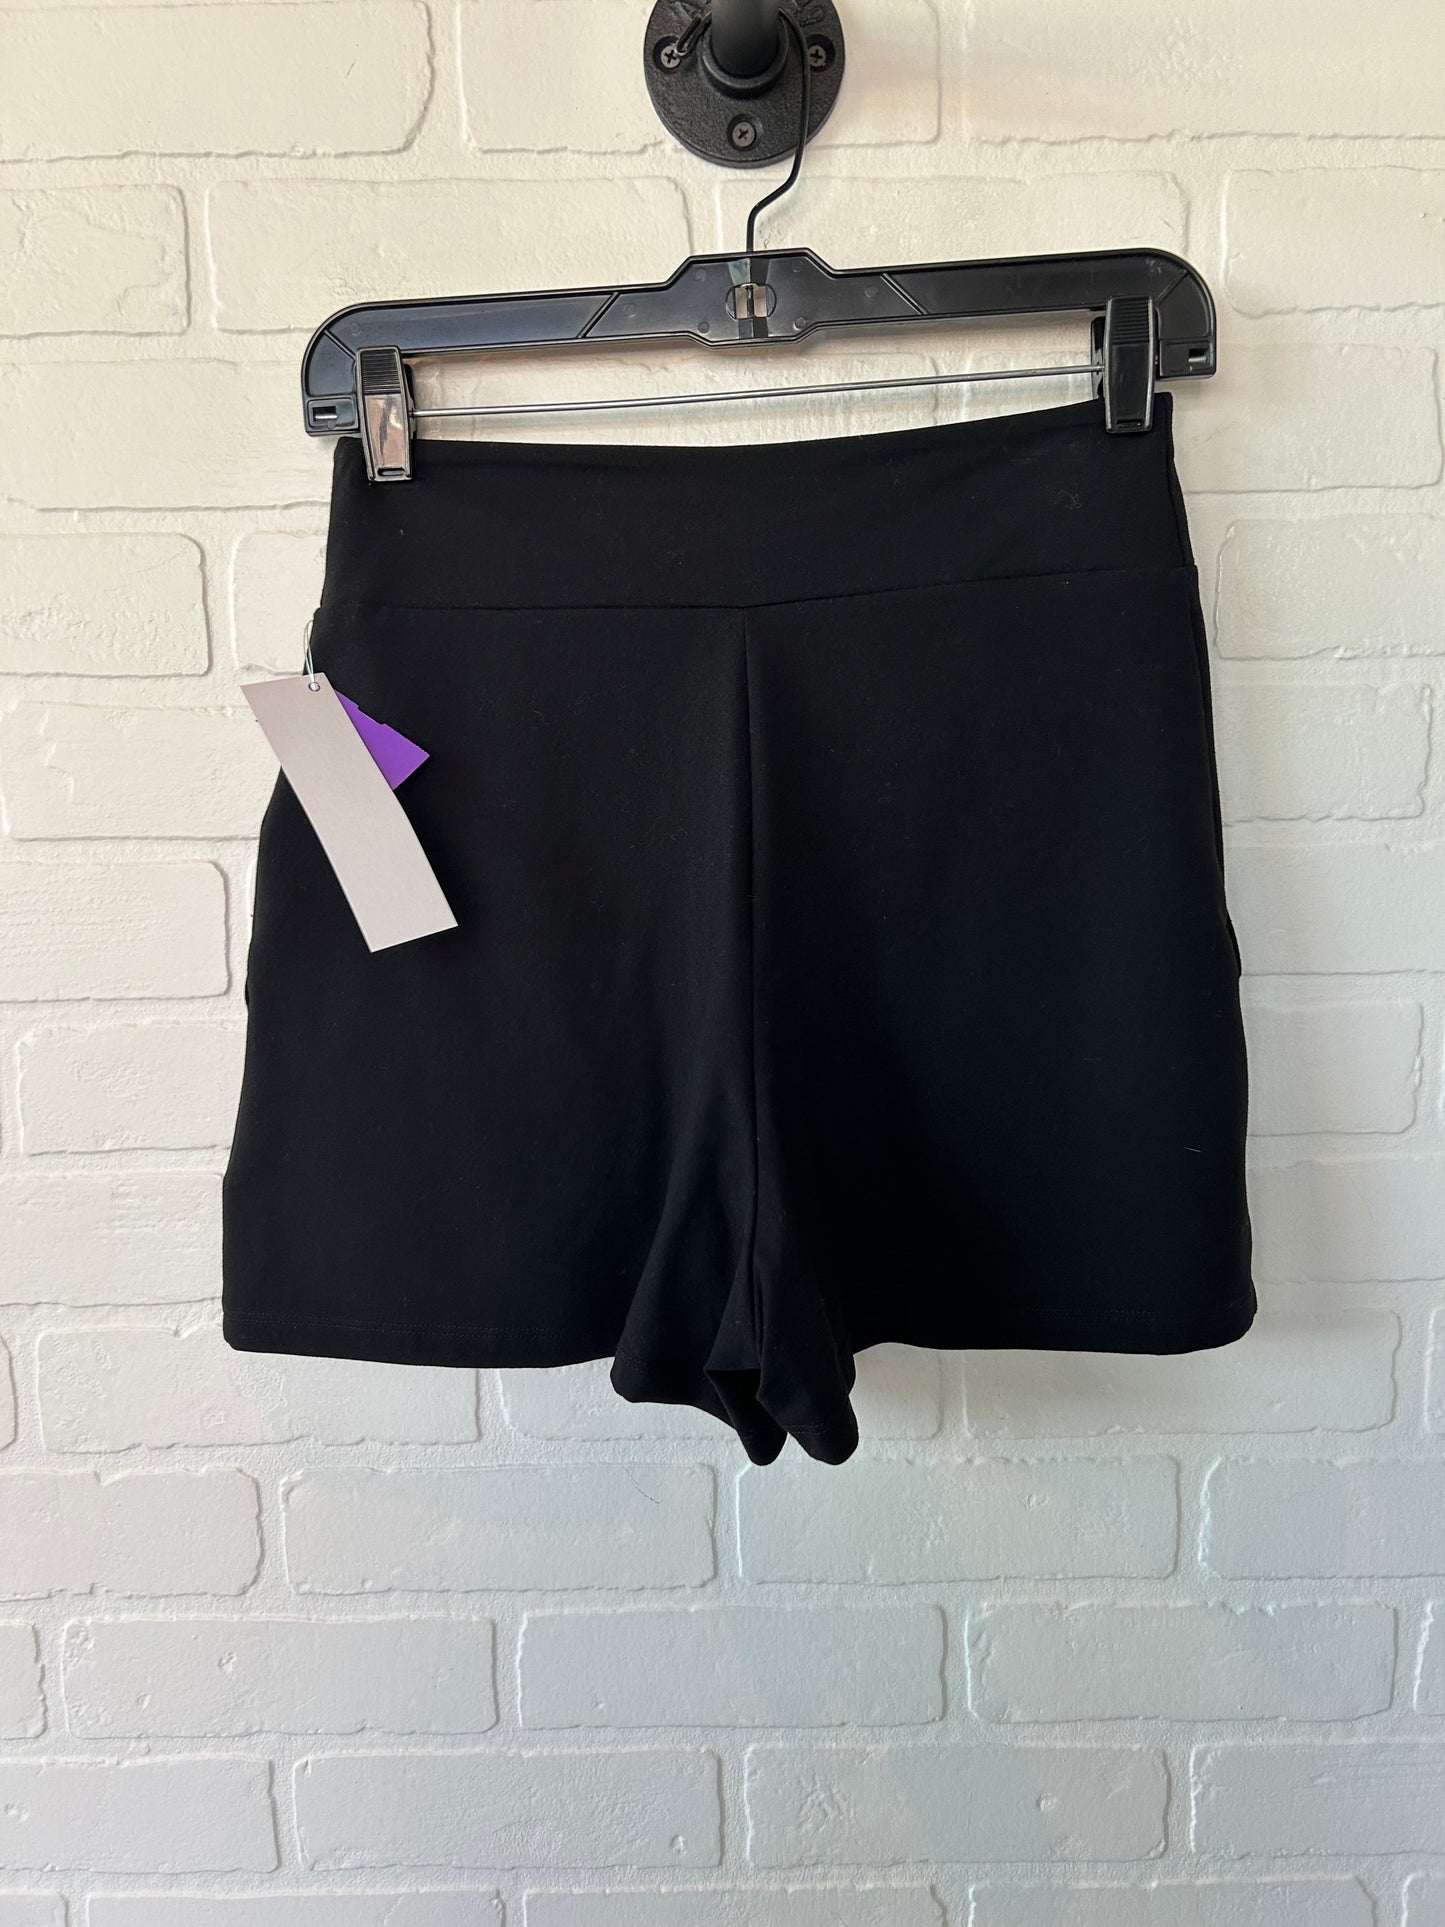 Black Shorts Susana Monaco, Size 0